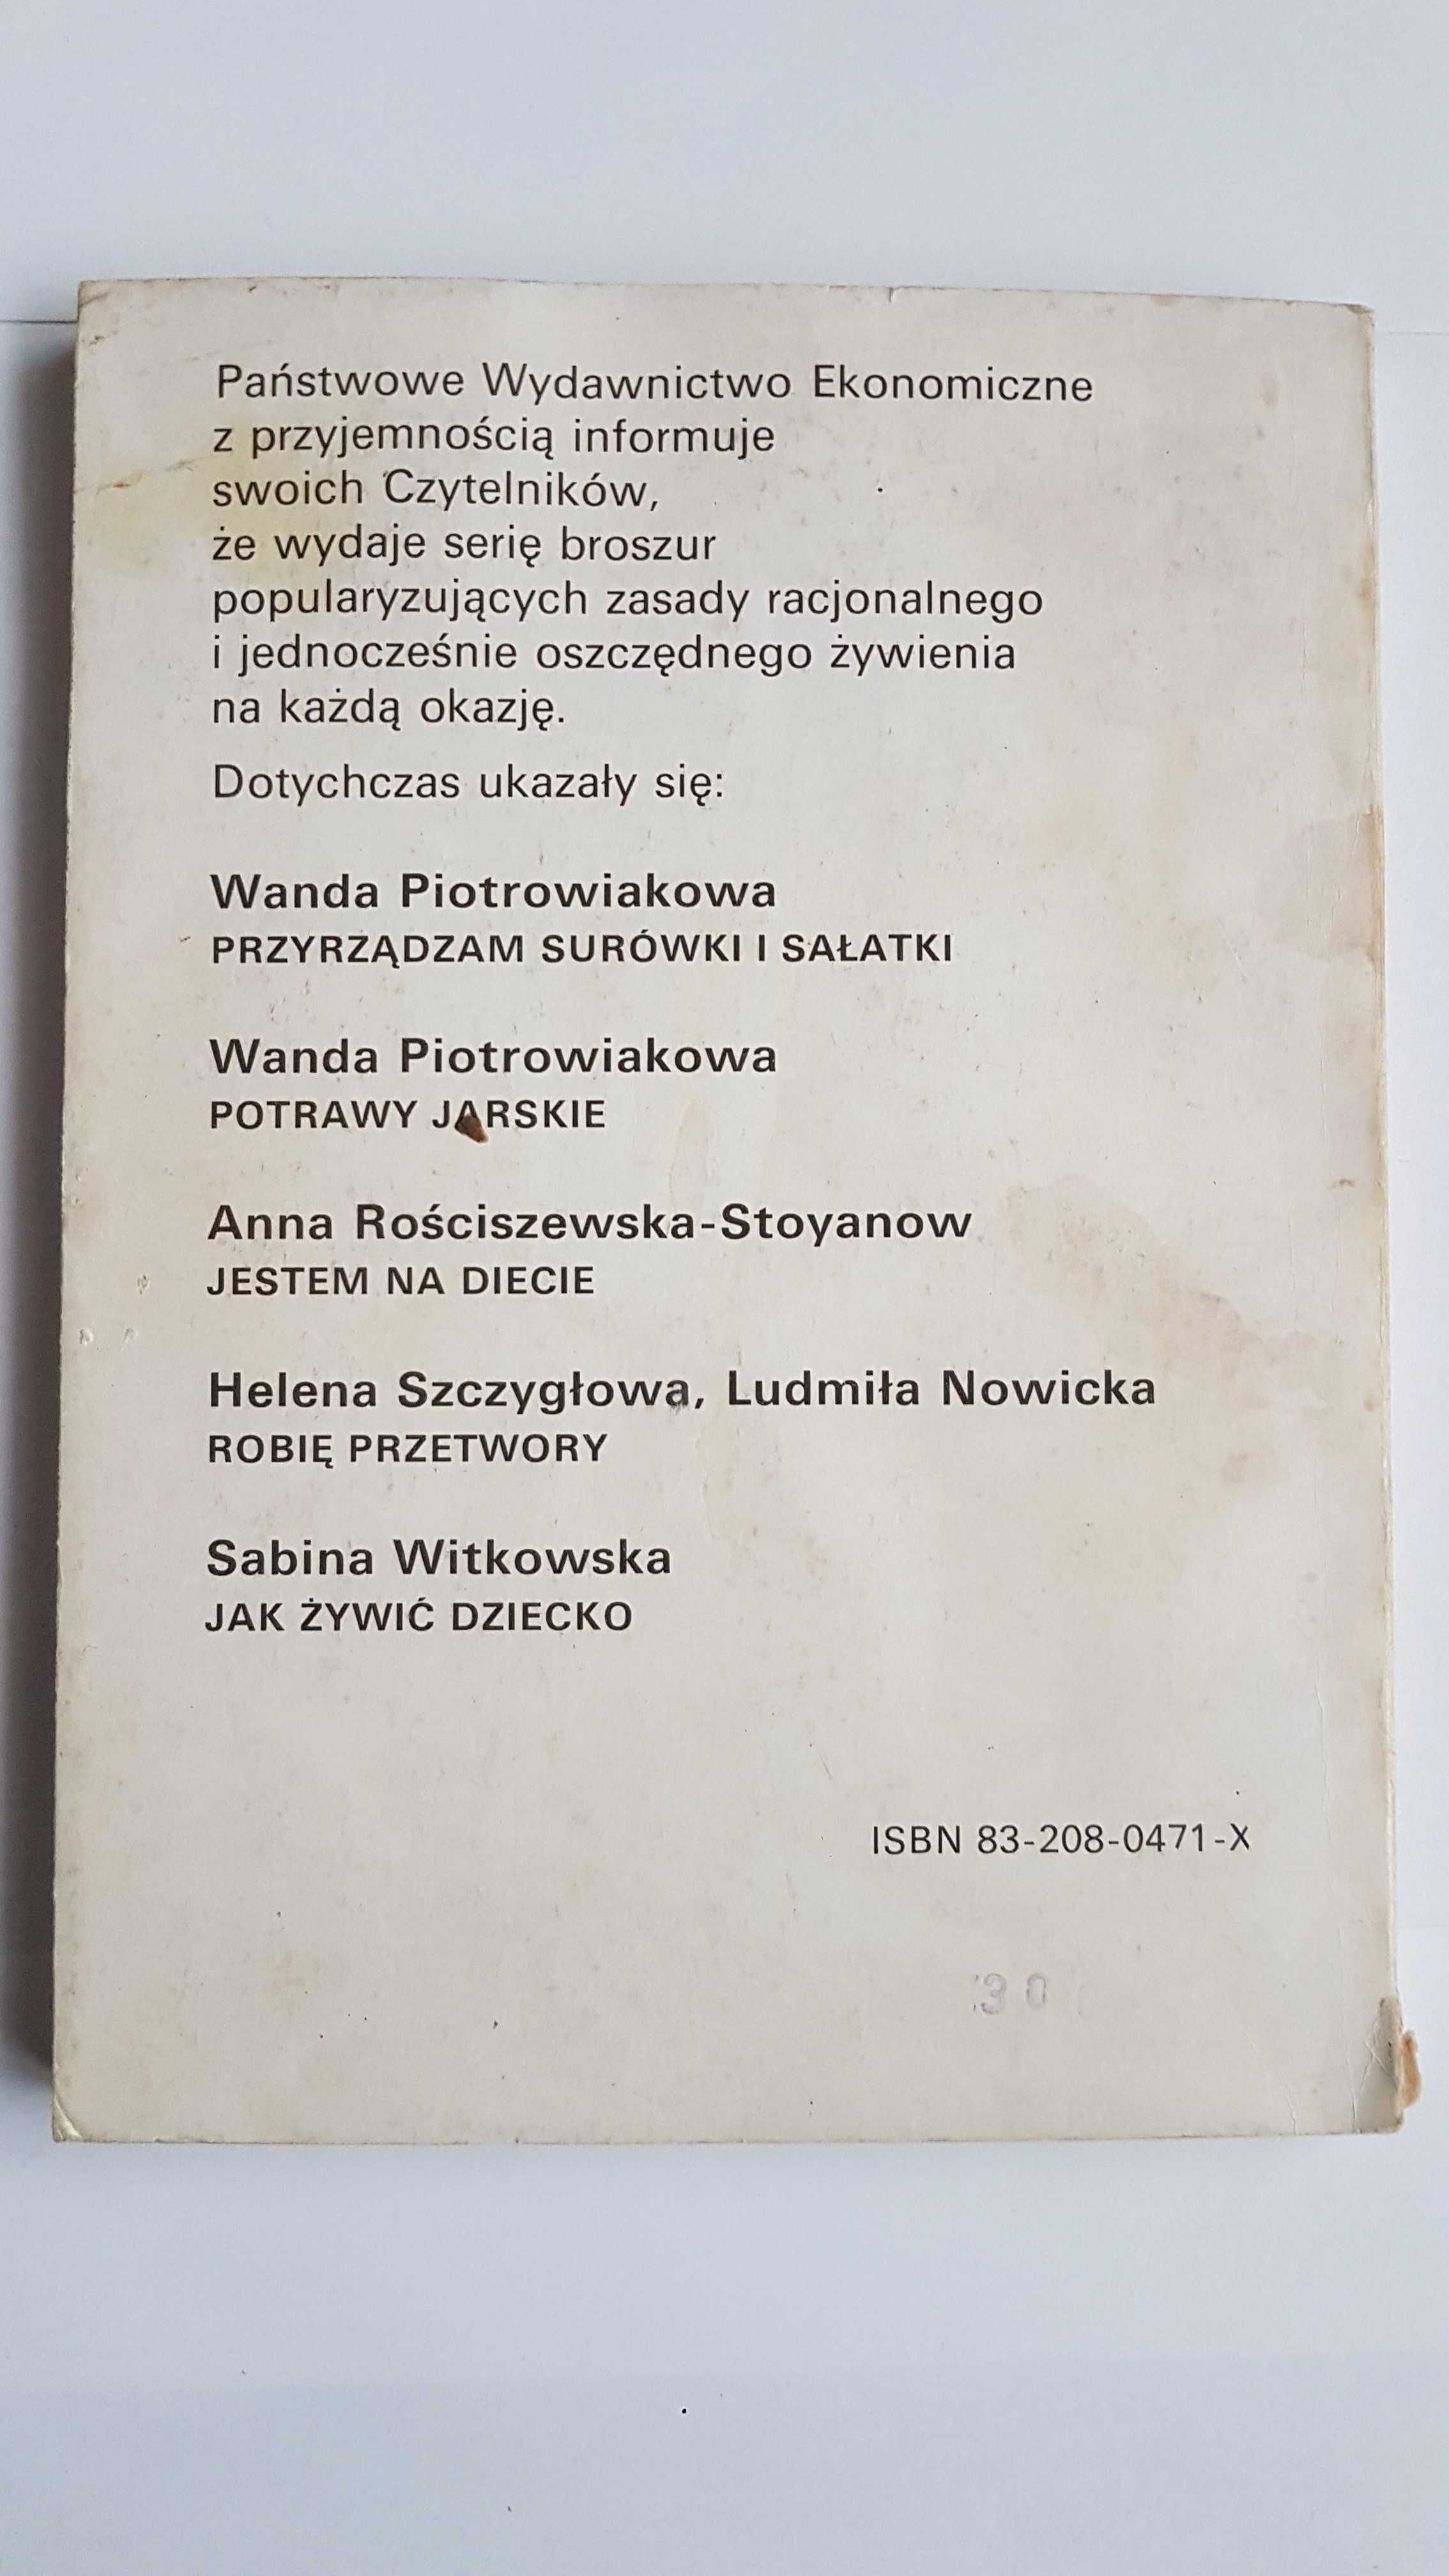 Piekę ciasta i ciasteczka - Wanda Piotrowiakowa